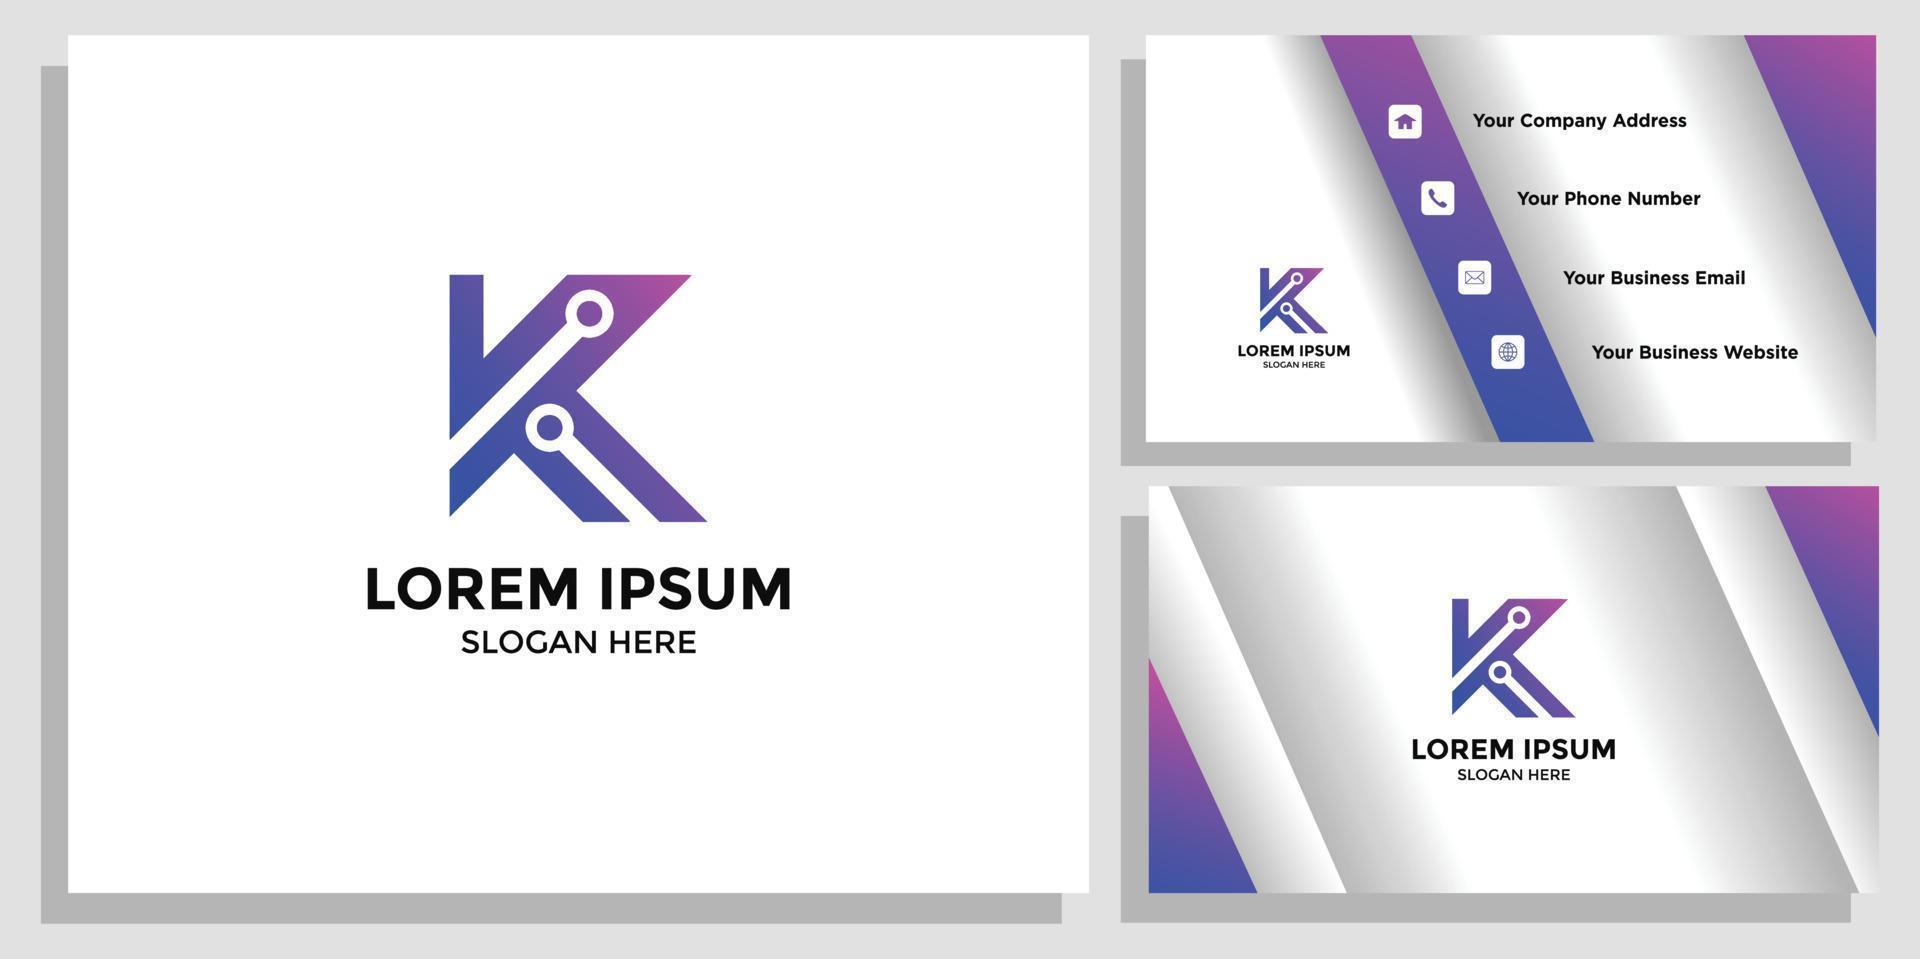 k-Buchstaben-Logo-Design und Branding-Karte vektor